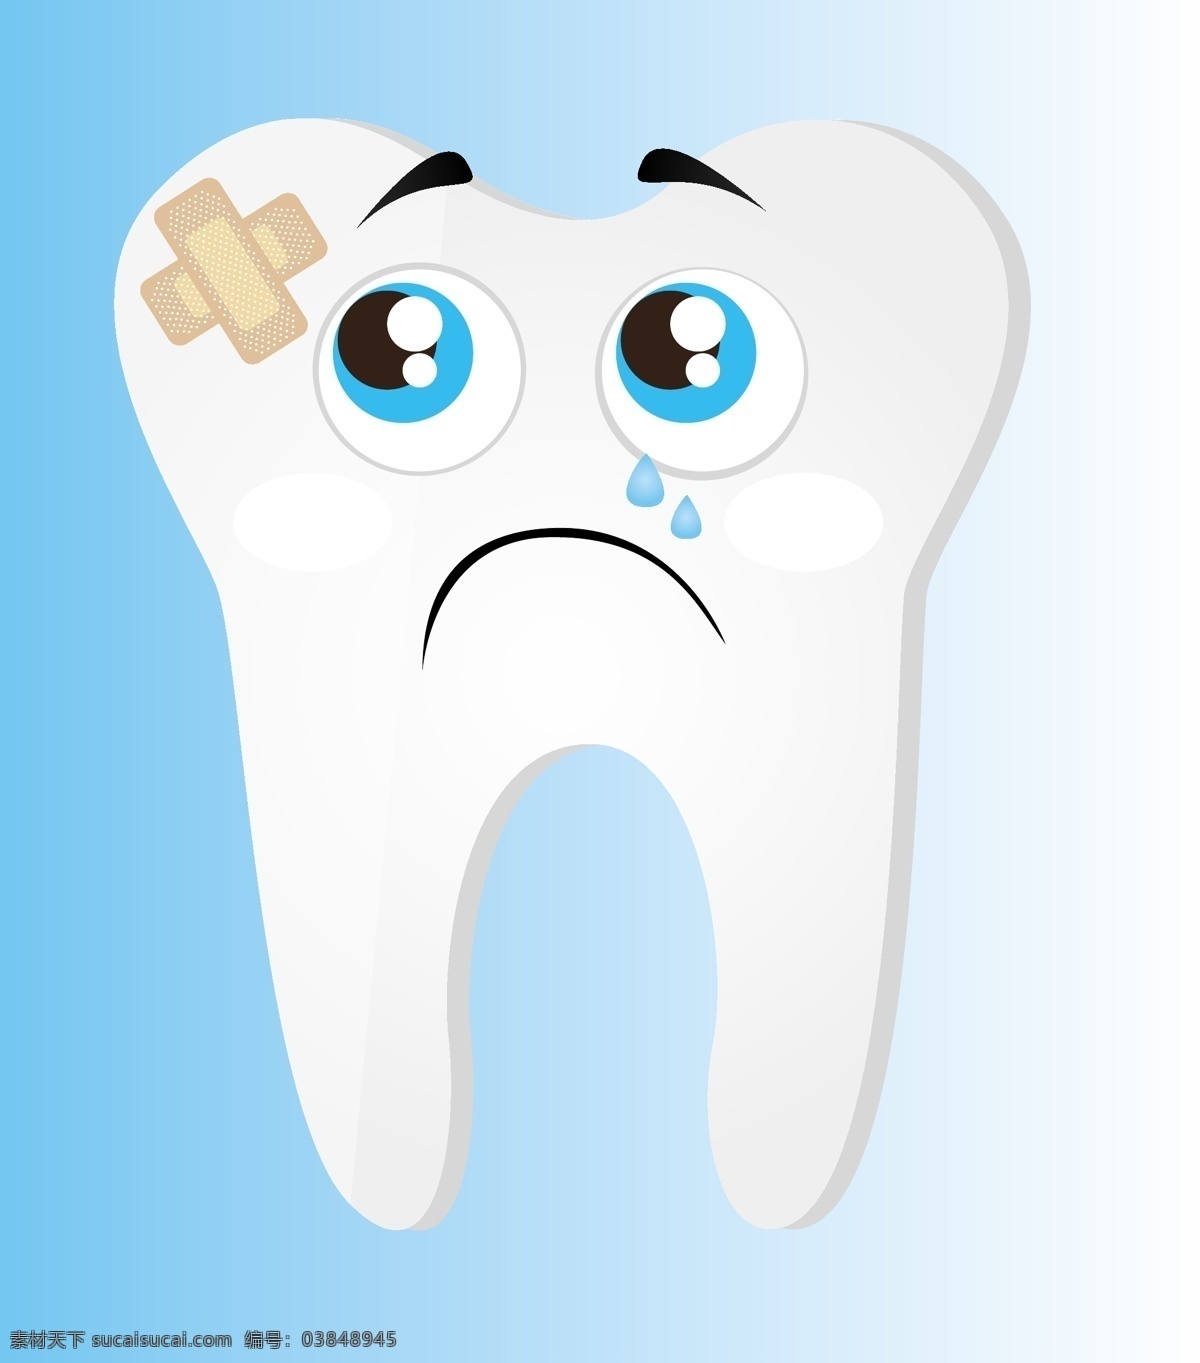 爱护牙齿 保护牙齿 牙齿 刷牙 牙膏 保护 爱护 保健 牙齿清洁 牙齿保健